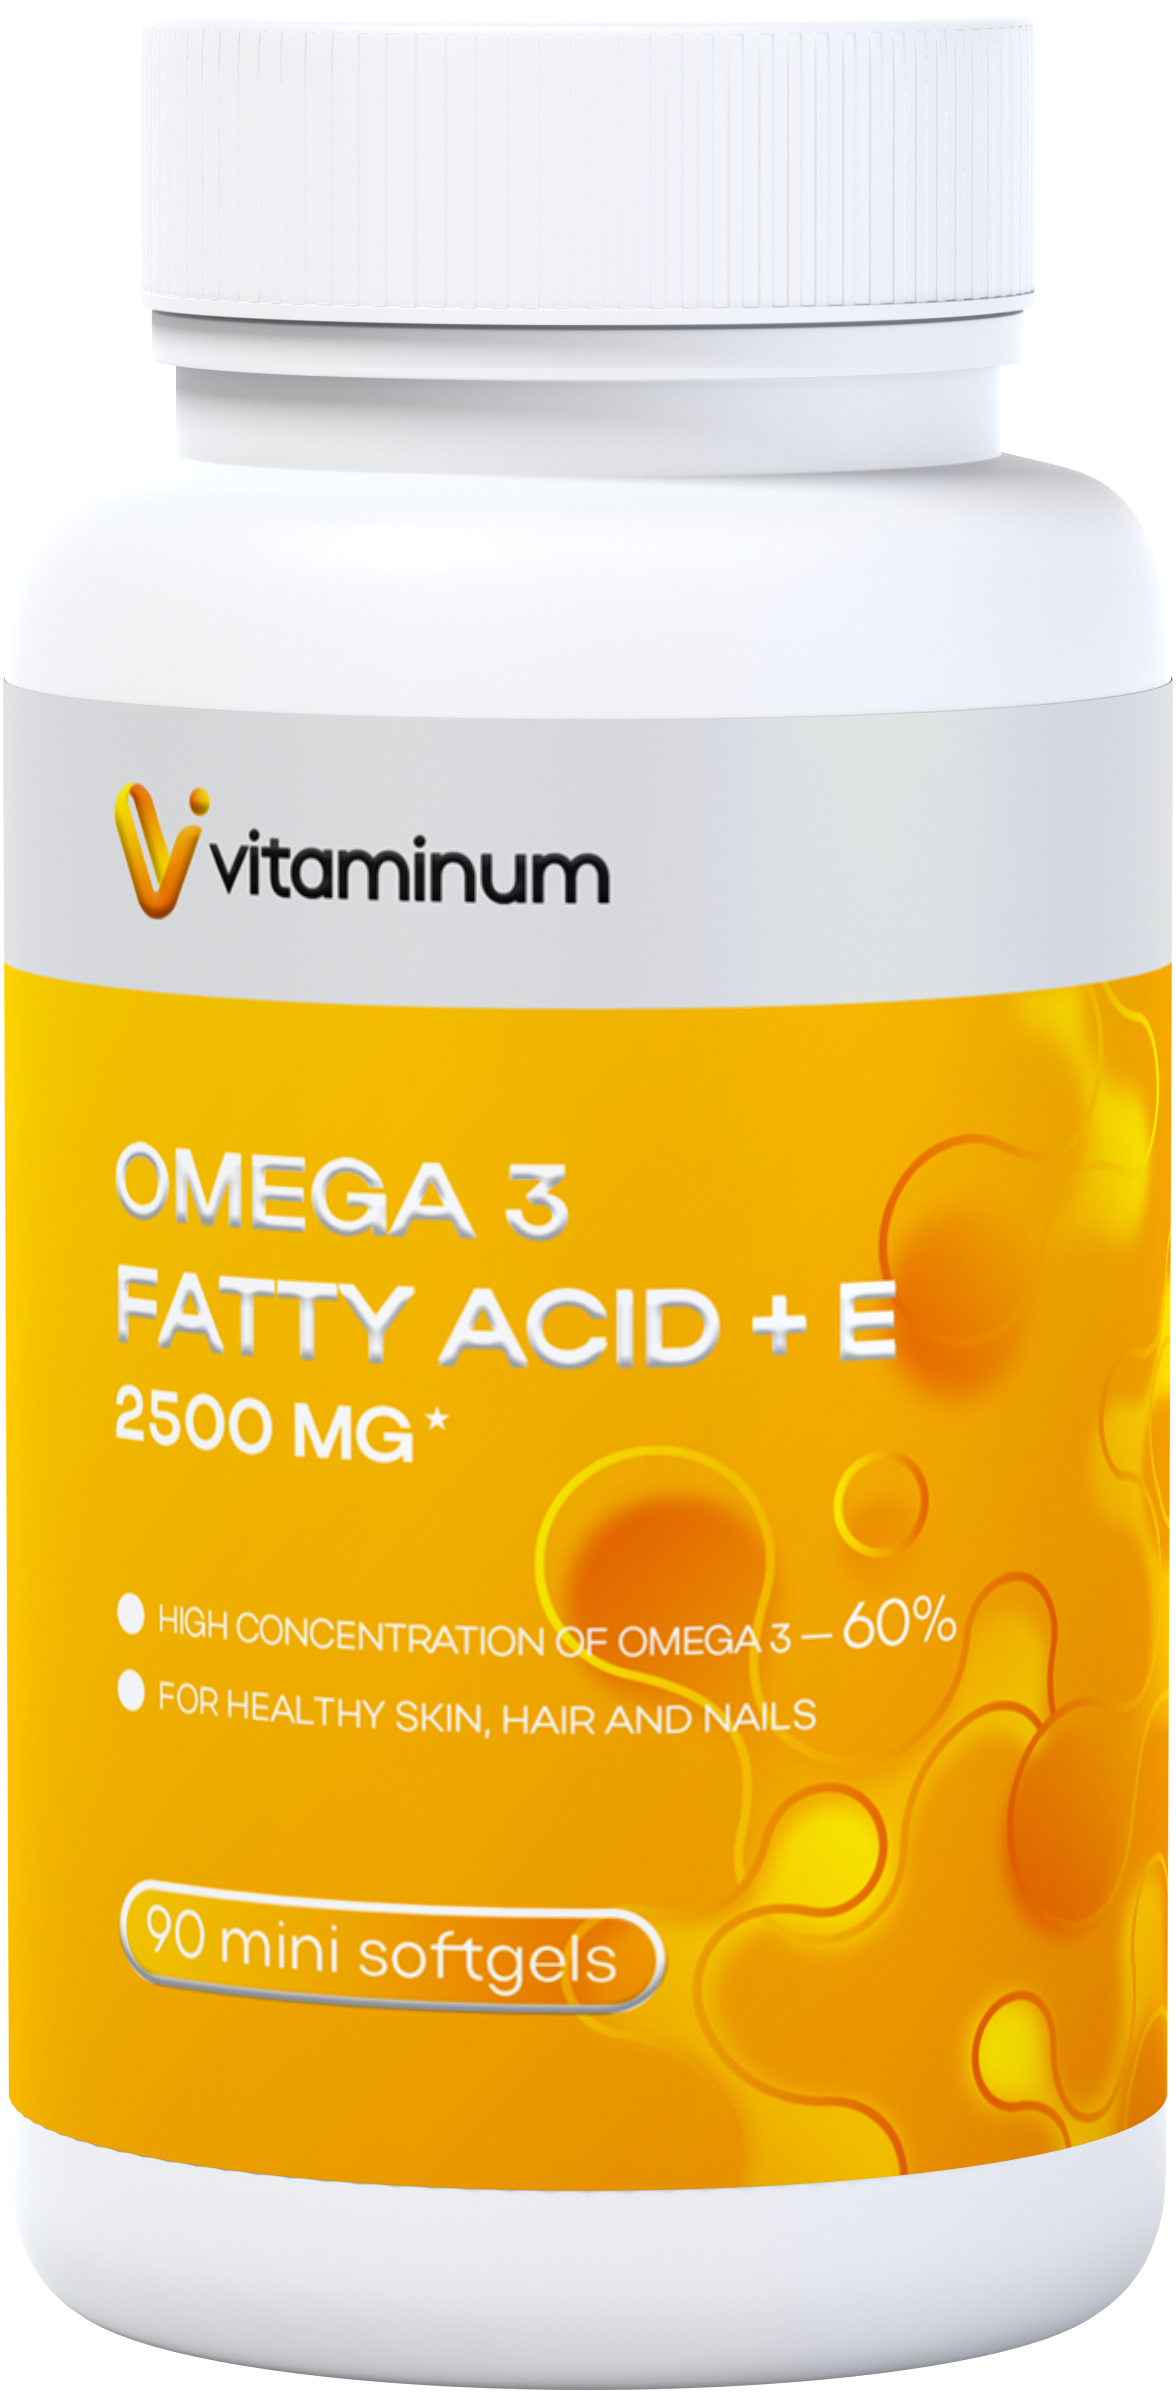  Vitaminum ОМЕГА 3 60% + витамин Е (2500 MG*) 90 капсул 700 мг   в Барнауле